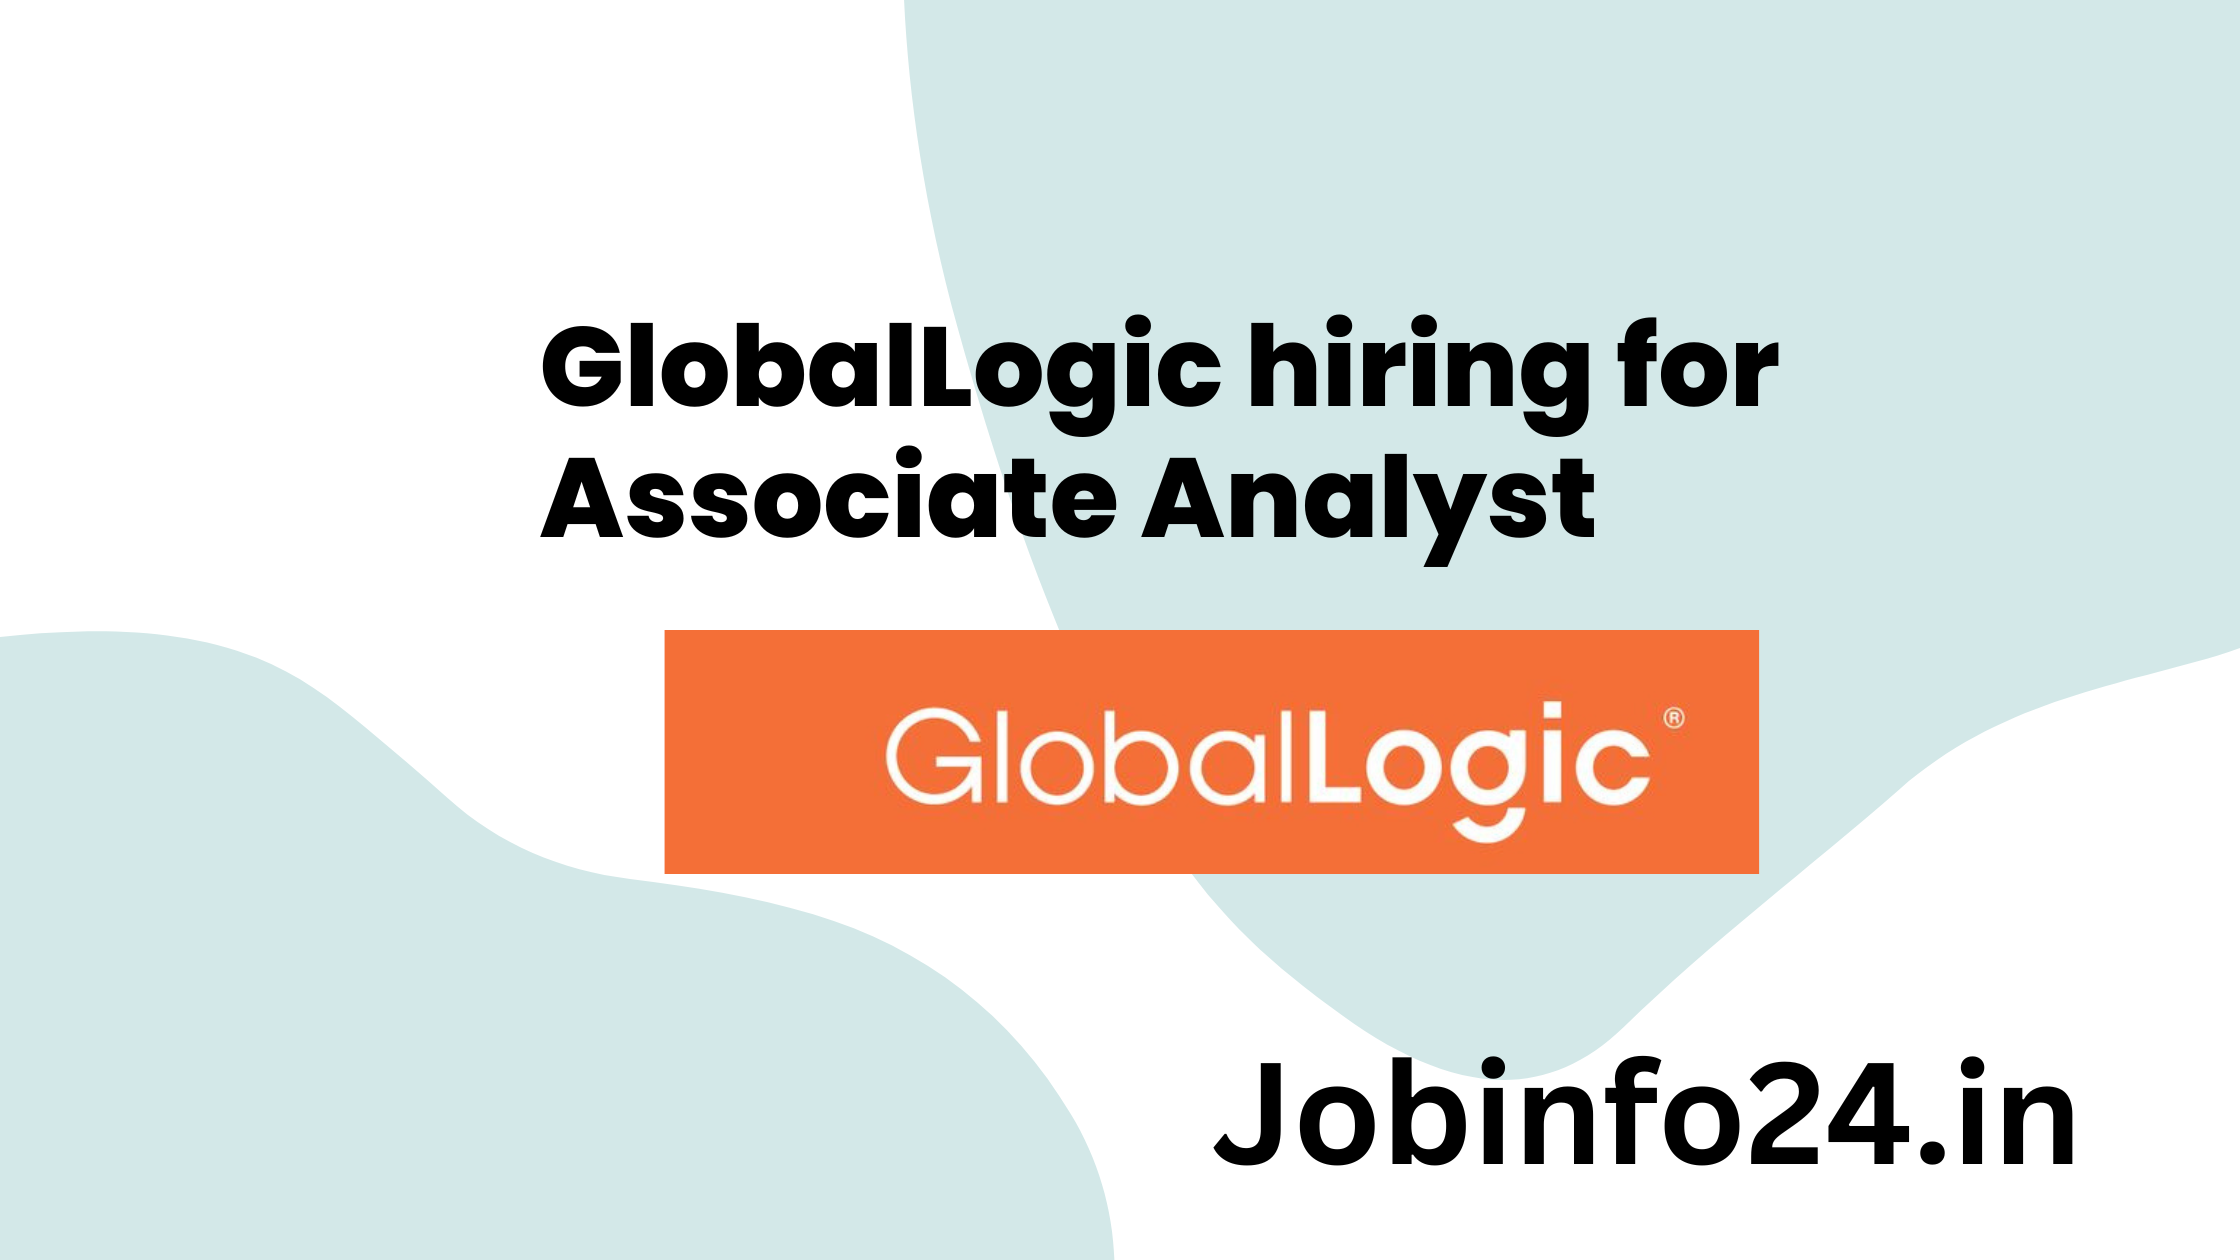 GlobalLogic hiring for Associate Analyst